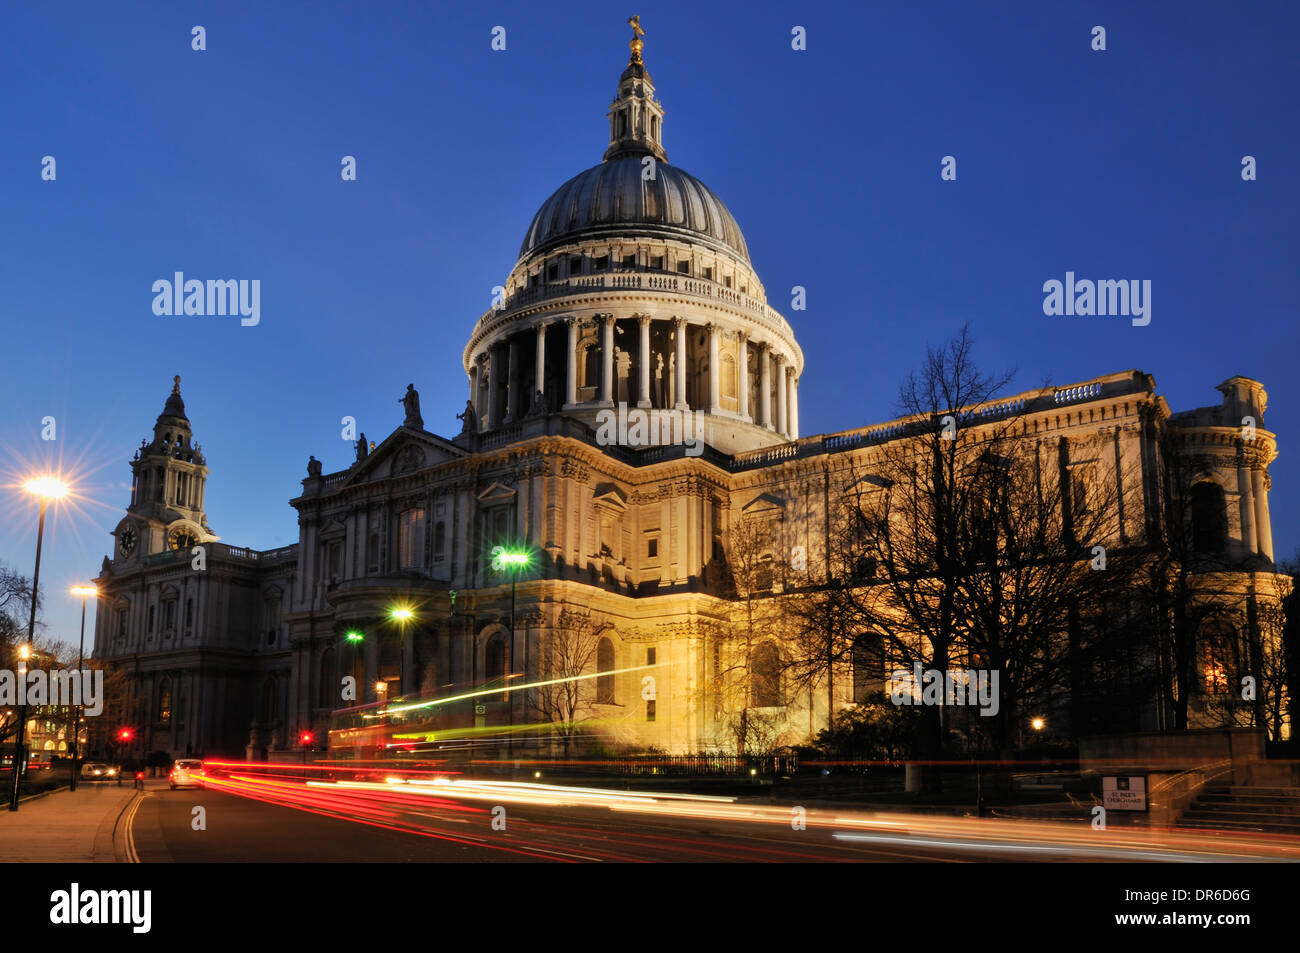 La cattedrale di St Paul, Londra UK, illuminato di sera, con striature chiare da traffico Foto Stock